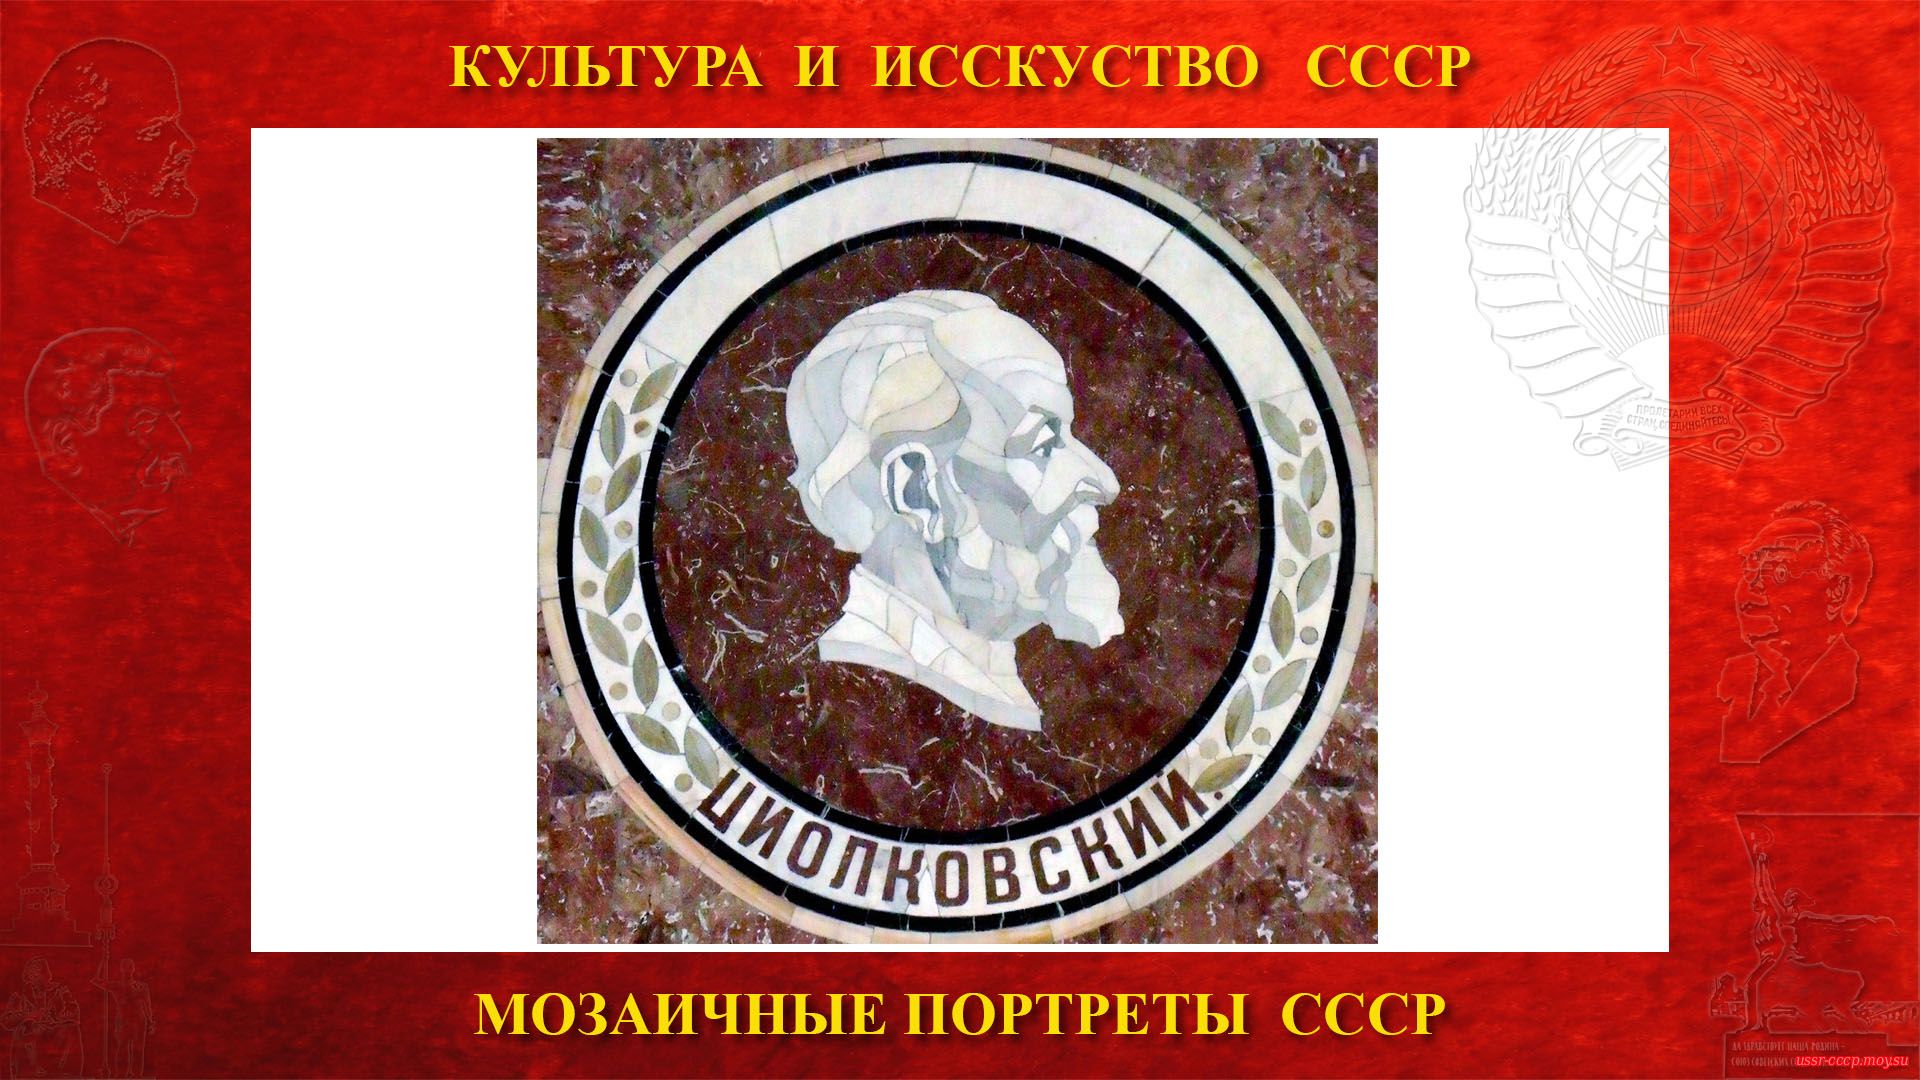 Мозаичный портрет Циолковскому К.Э. на Ленинских горах в ГЗ МГУ (Москва 1953) (повествование)